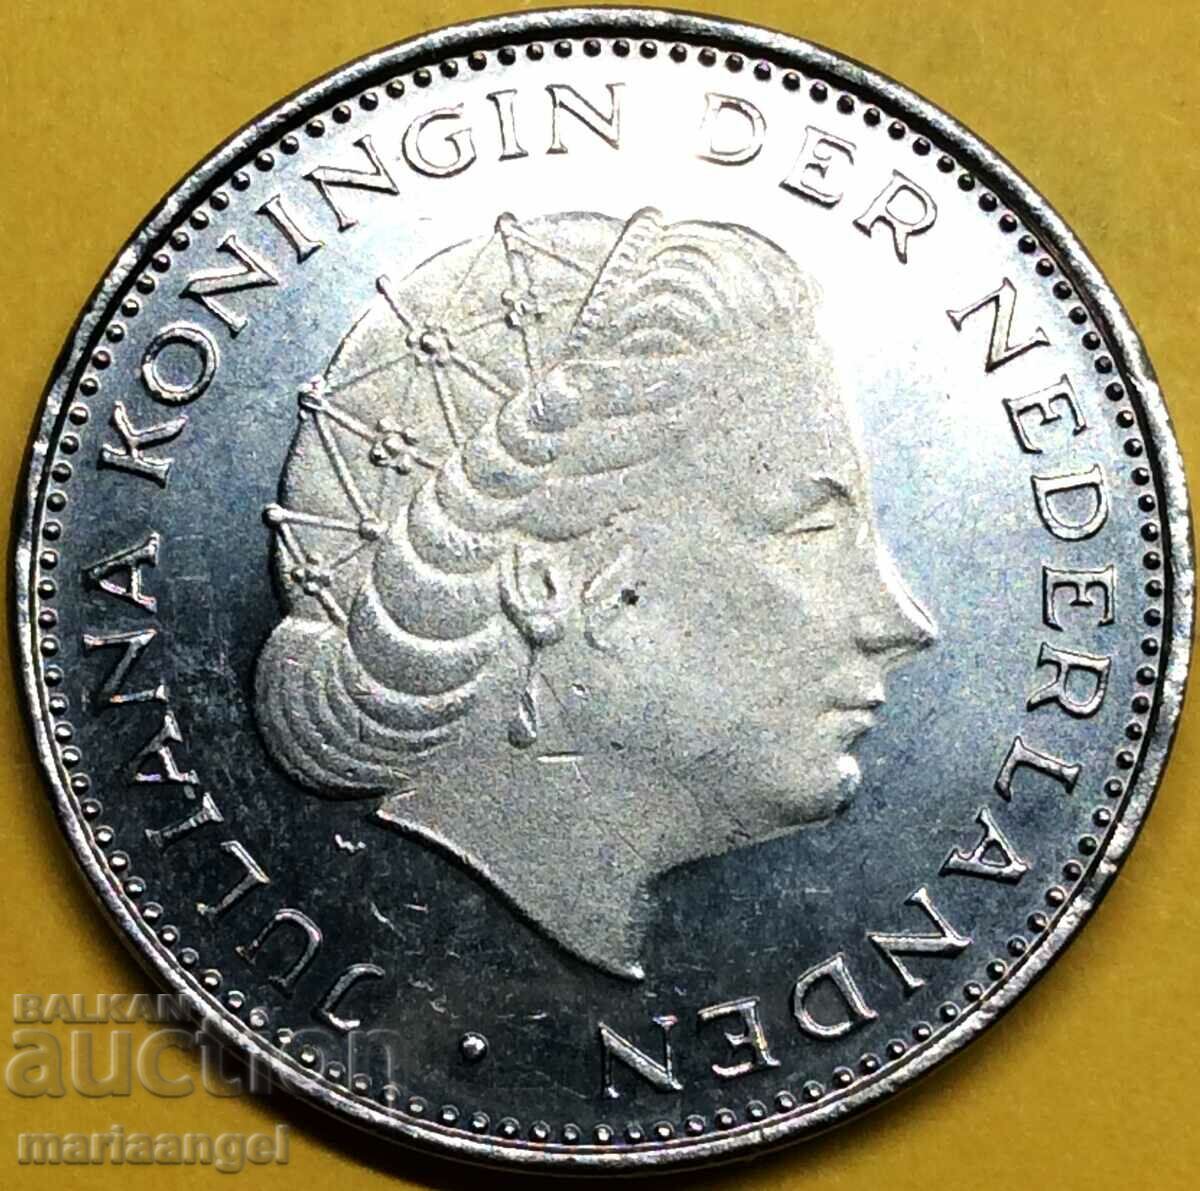 Ολλανδία 1979 2 1/2 Gulden Juliana Proof-like 29mm